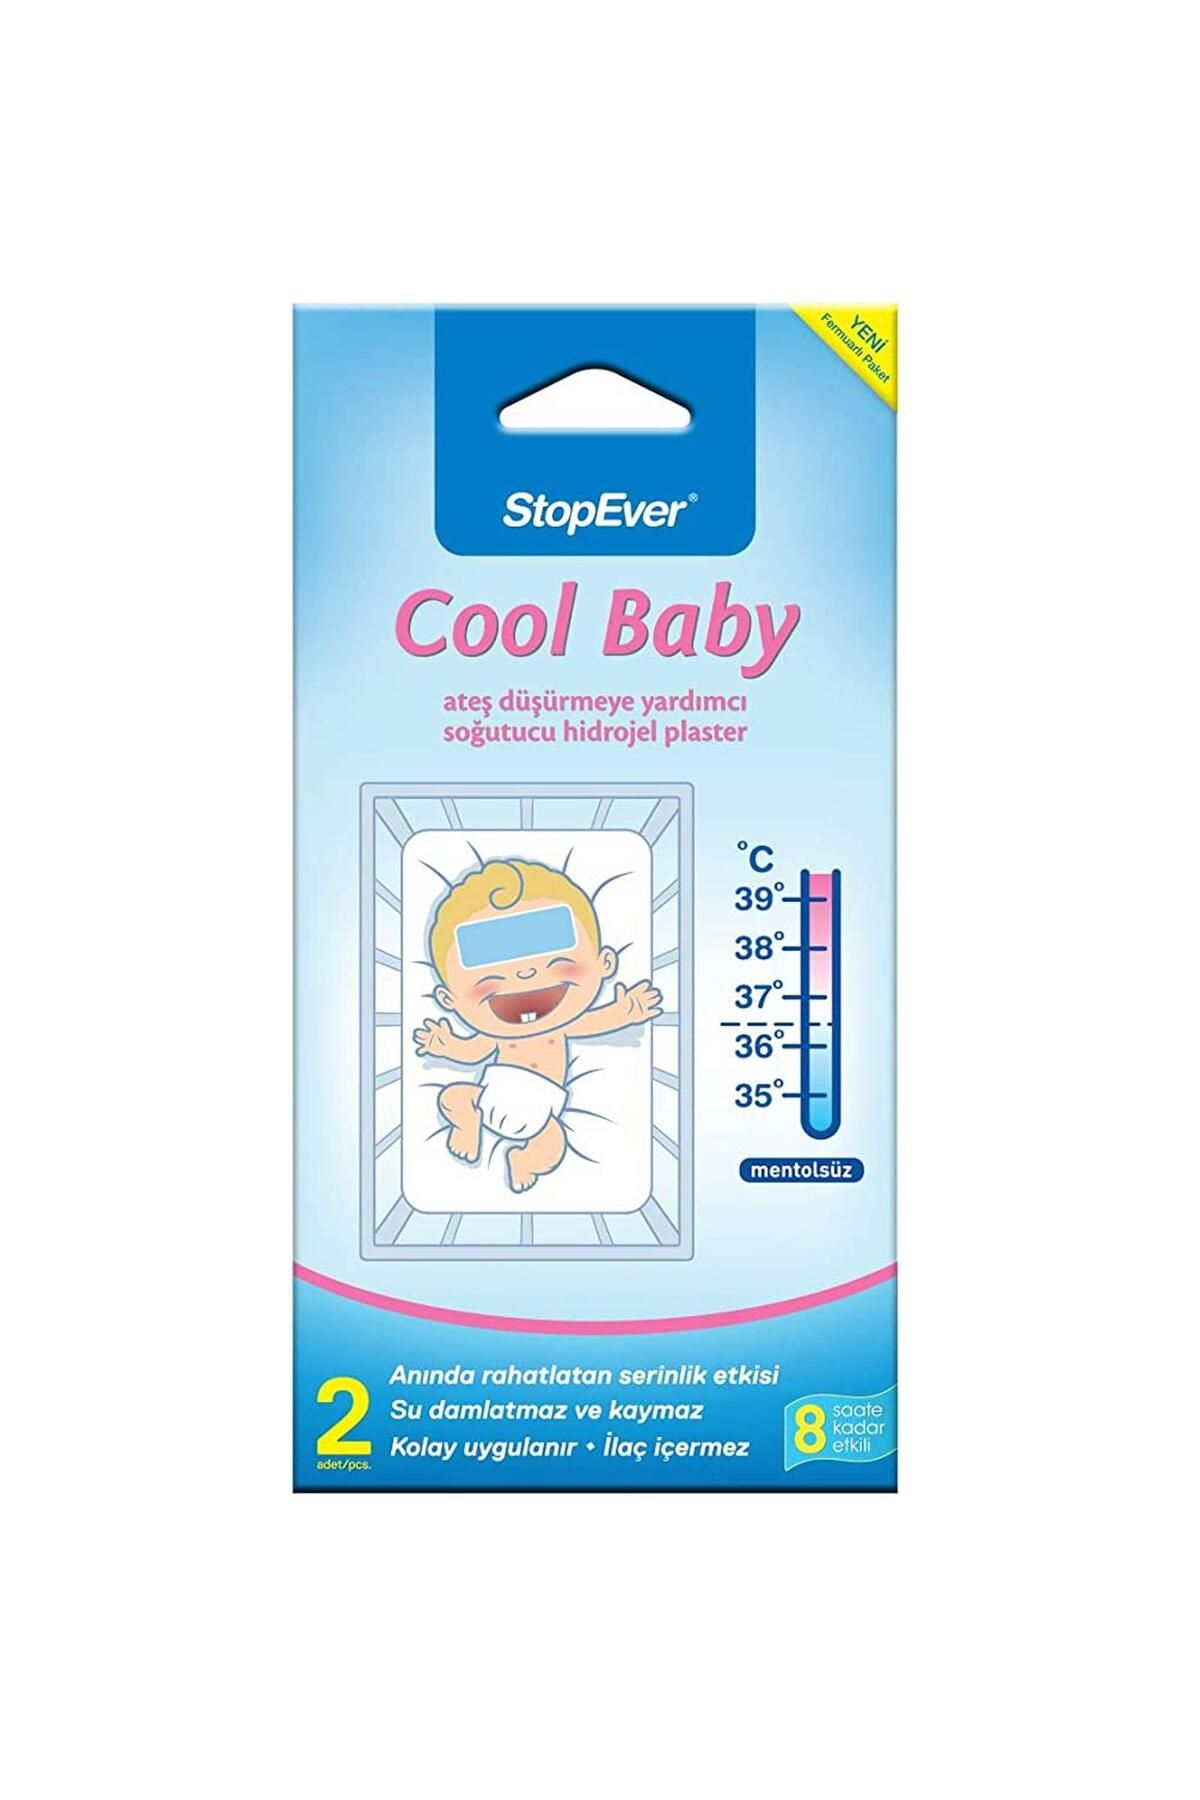 StopEver Cool Baby Ateş Düşürmeye Yardımcı Soğutucu Hidrojel Plaster 2 Li